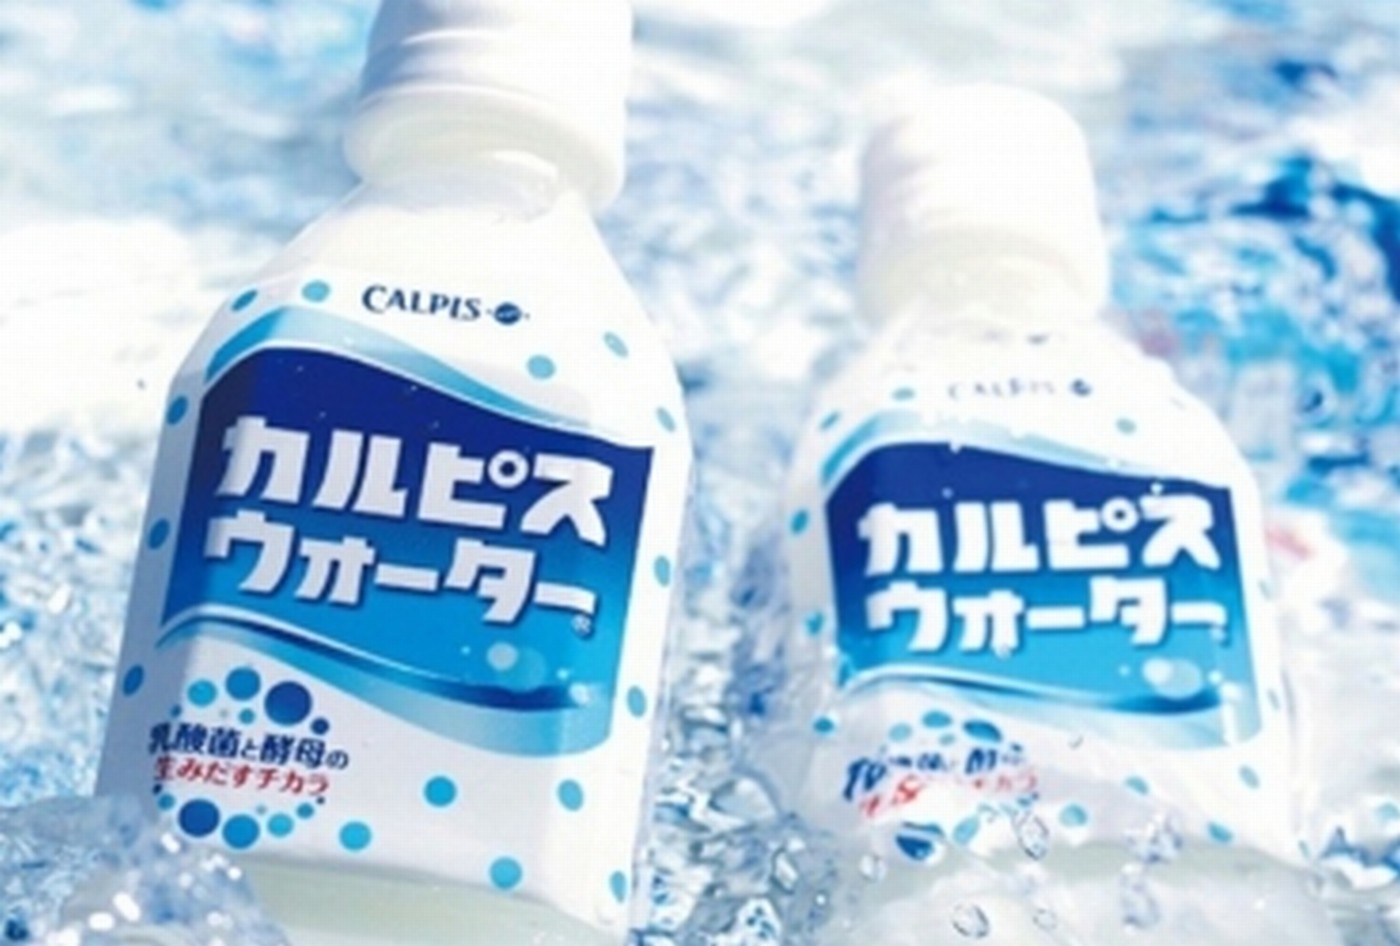  Calpis đồ uống vô cùng phổ biến ở Nhật, đã bán được trên 100 năm